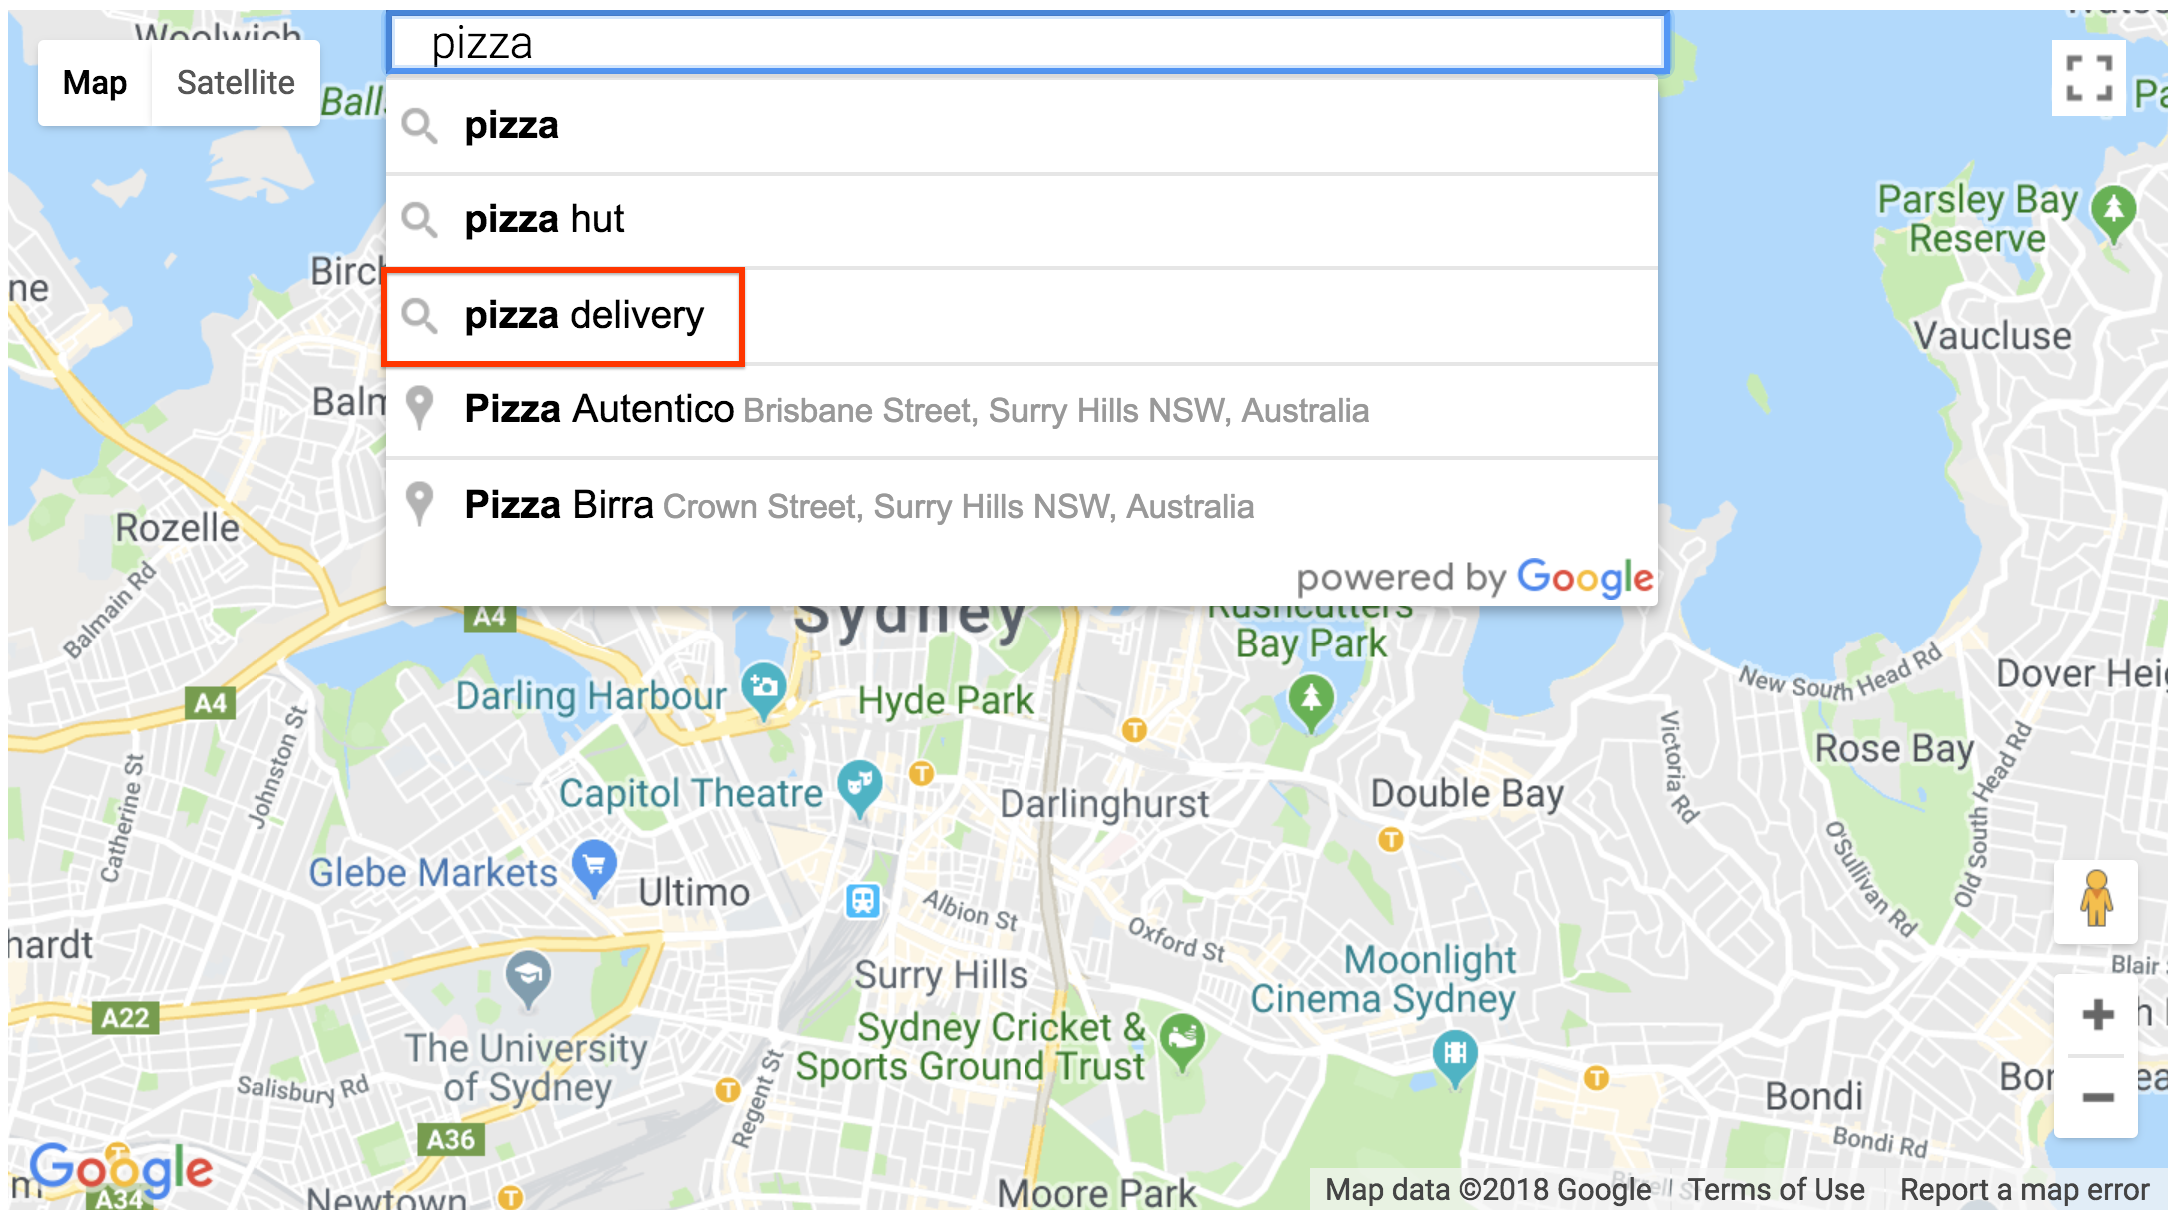 Selezione delle query del widget della casella di ricerca dei dettagli dei luoghi